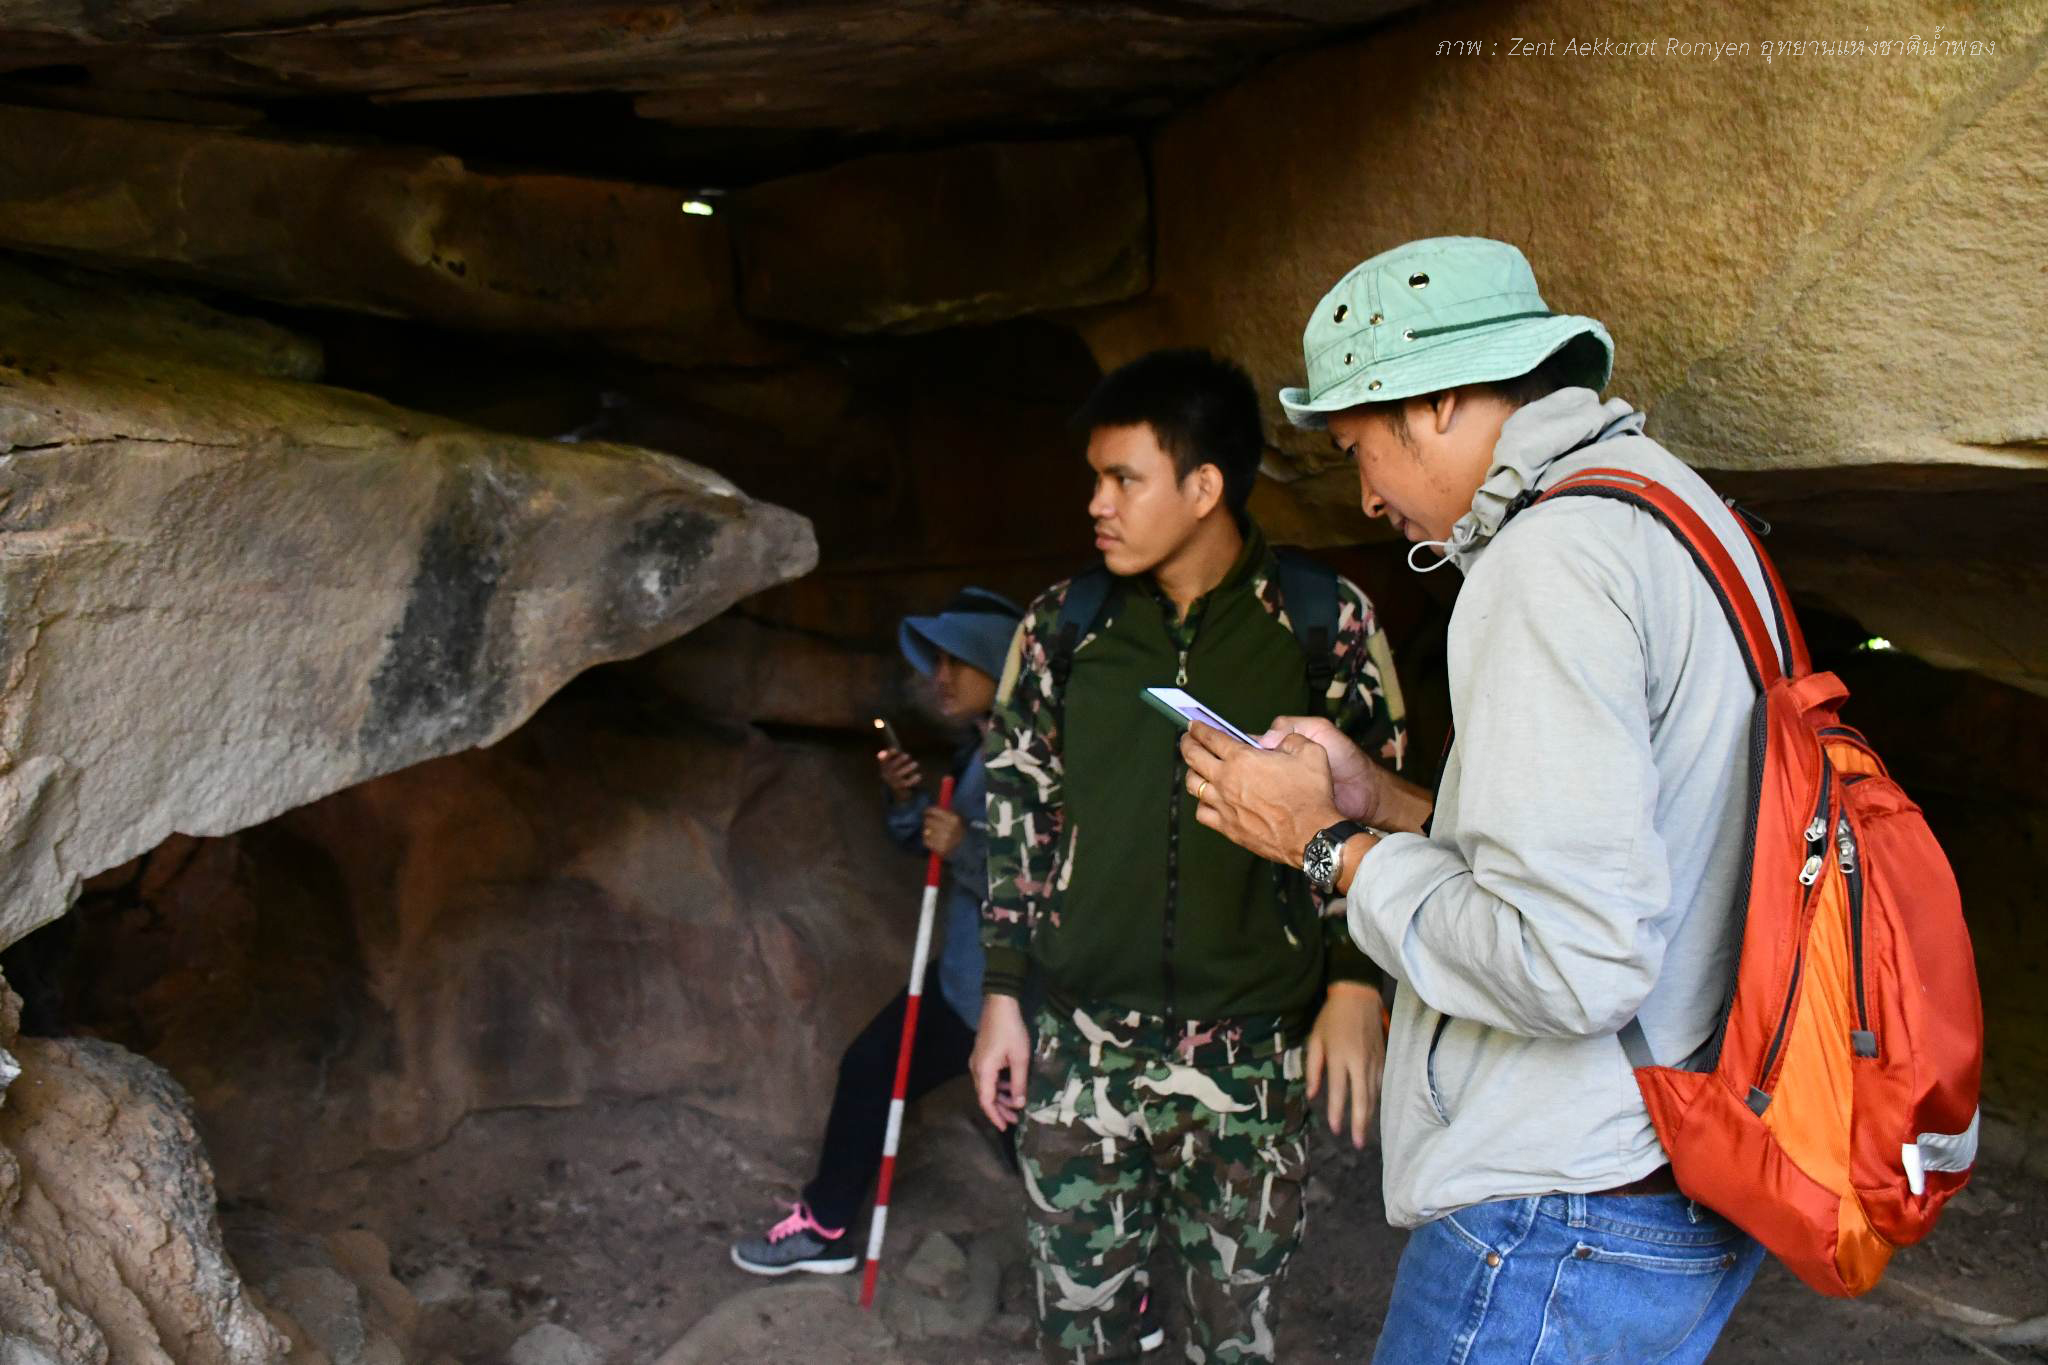 สำรวจแหล่งภาพเขียนสีถ้ำวีรยุทธ ๑ ในเขตอุทยานแห่งชาติน้ำพอง จังหวัดขอนแก่น